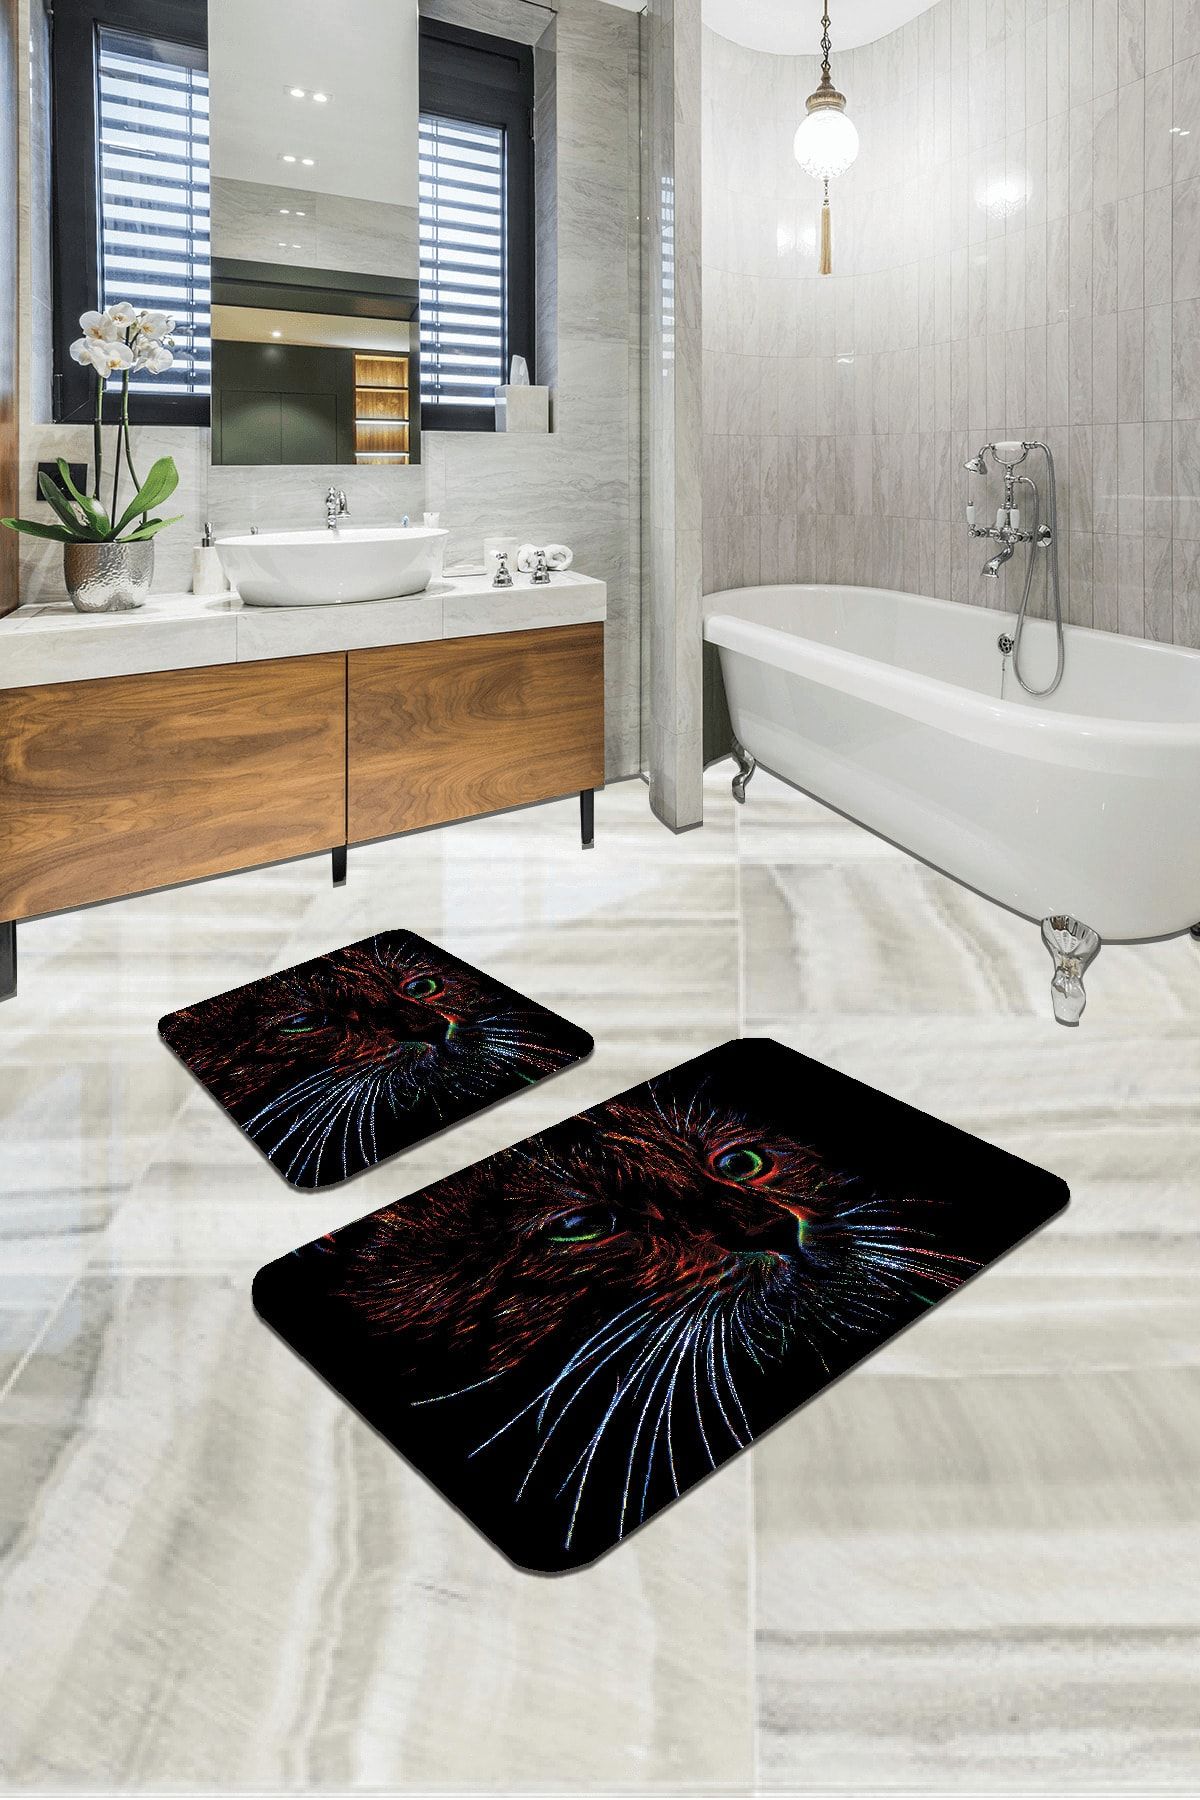 RugViva Dijital Banyo Halısı Klozet Takımı 2'li Paspas Seti Bs295 60x90cm + 60x60cm